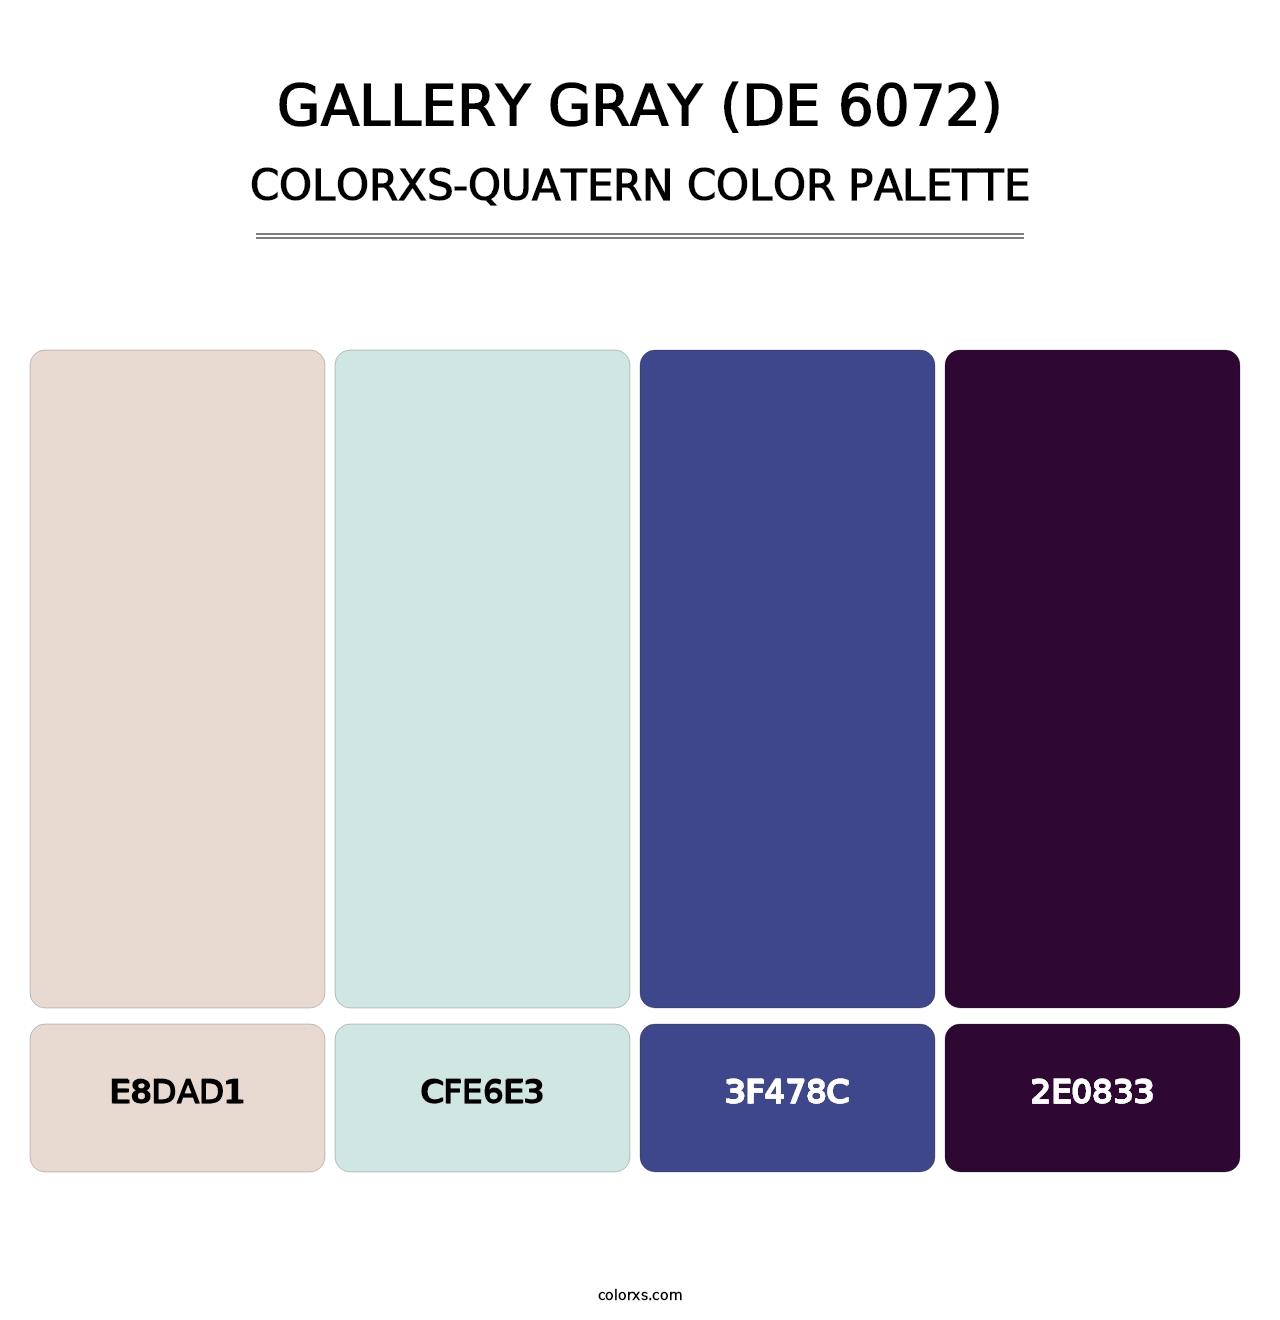 Gallery Gray (DE 6072) - Colorxs Quatern Palette